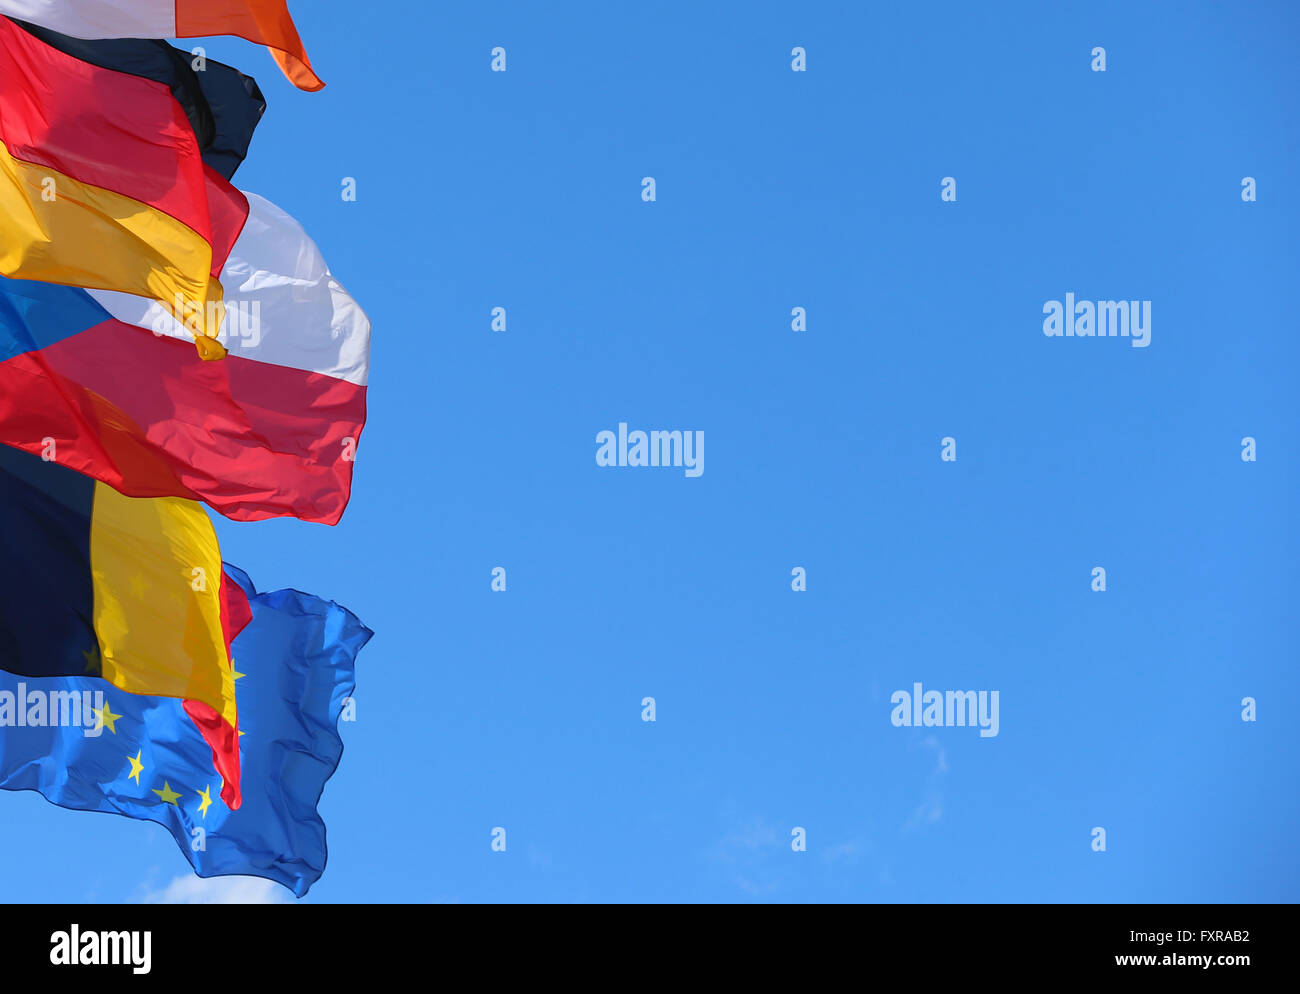 Estrasburgo, Francia. 12 abr, 2016. Las banderas nacionales de los Estados miembros de la Unión Europea se mecen con el viento conectados a postes de bandera frente al edificio del Parlamento Europeo en Estrasburgo, Francia, 12 de abril de 2016. Foto: Karl-Josef Hildenbrand/dpa/Alamy Live News Foto de stock